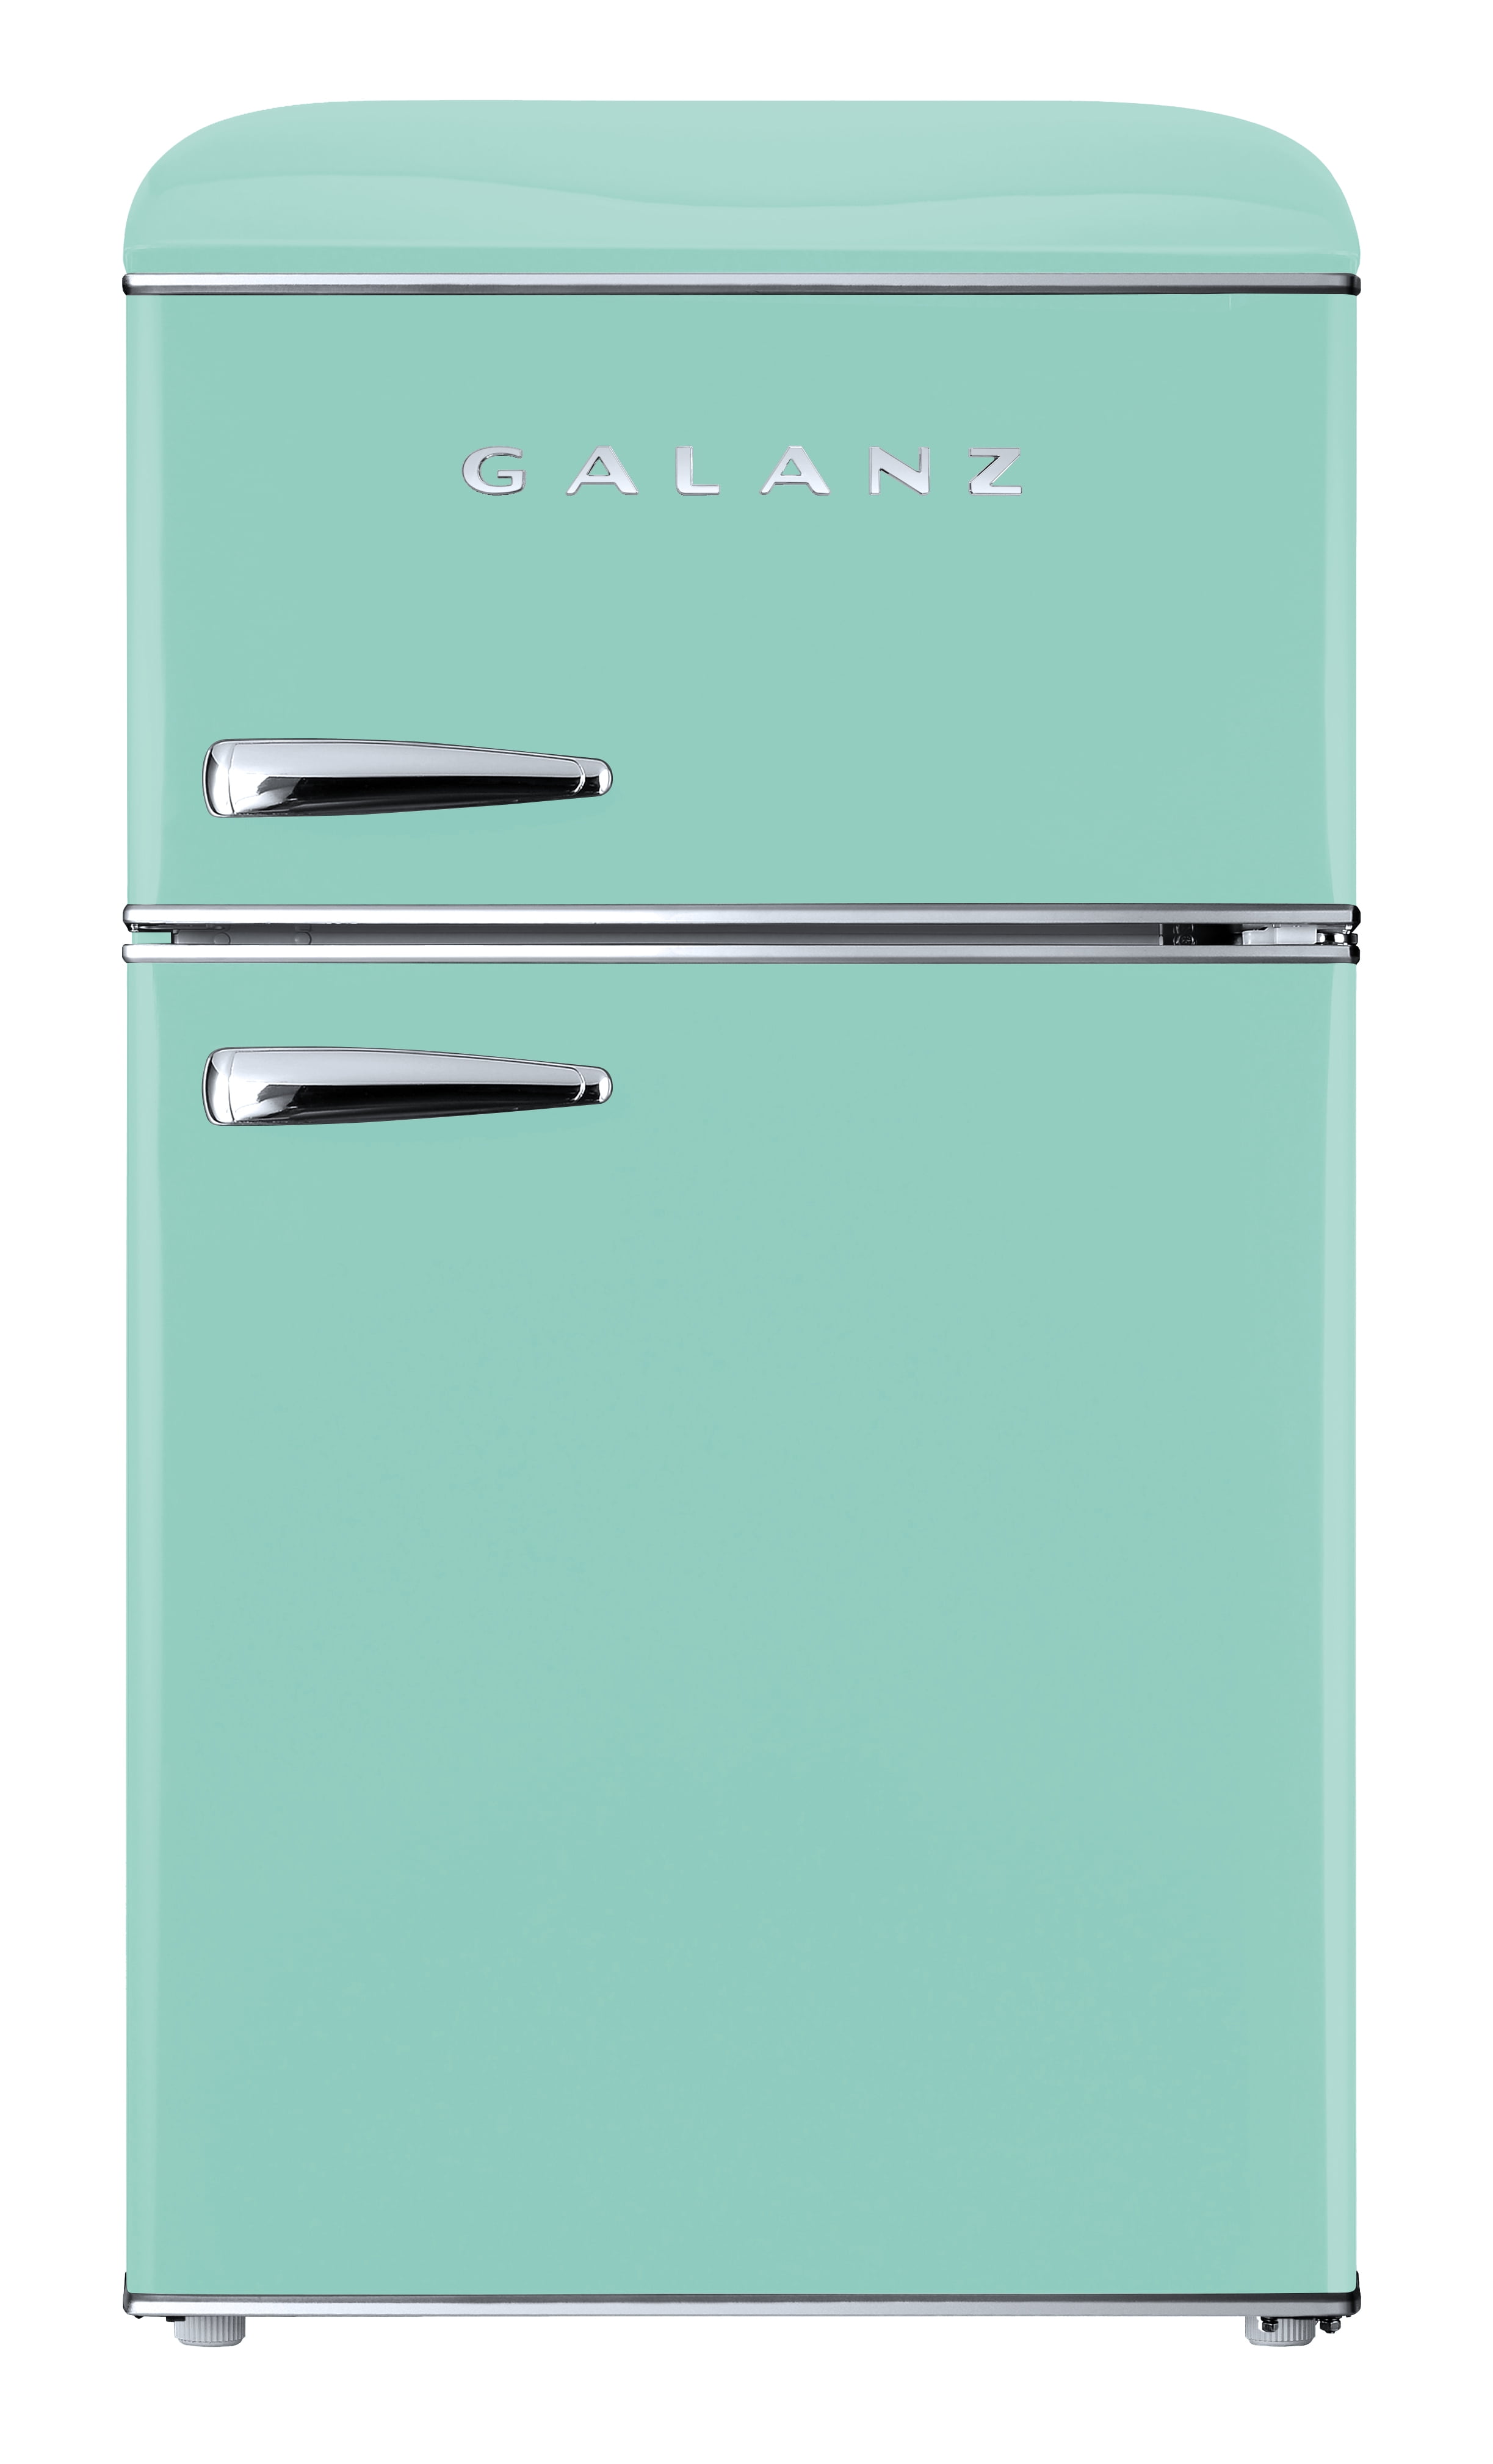 Buy Galanz Glr31tgner 3 1 Cu Ft Retro Compact Refrigerator True Top